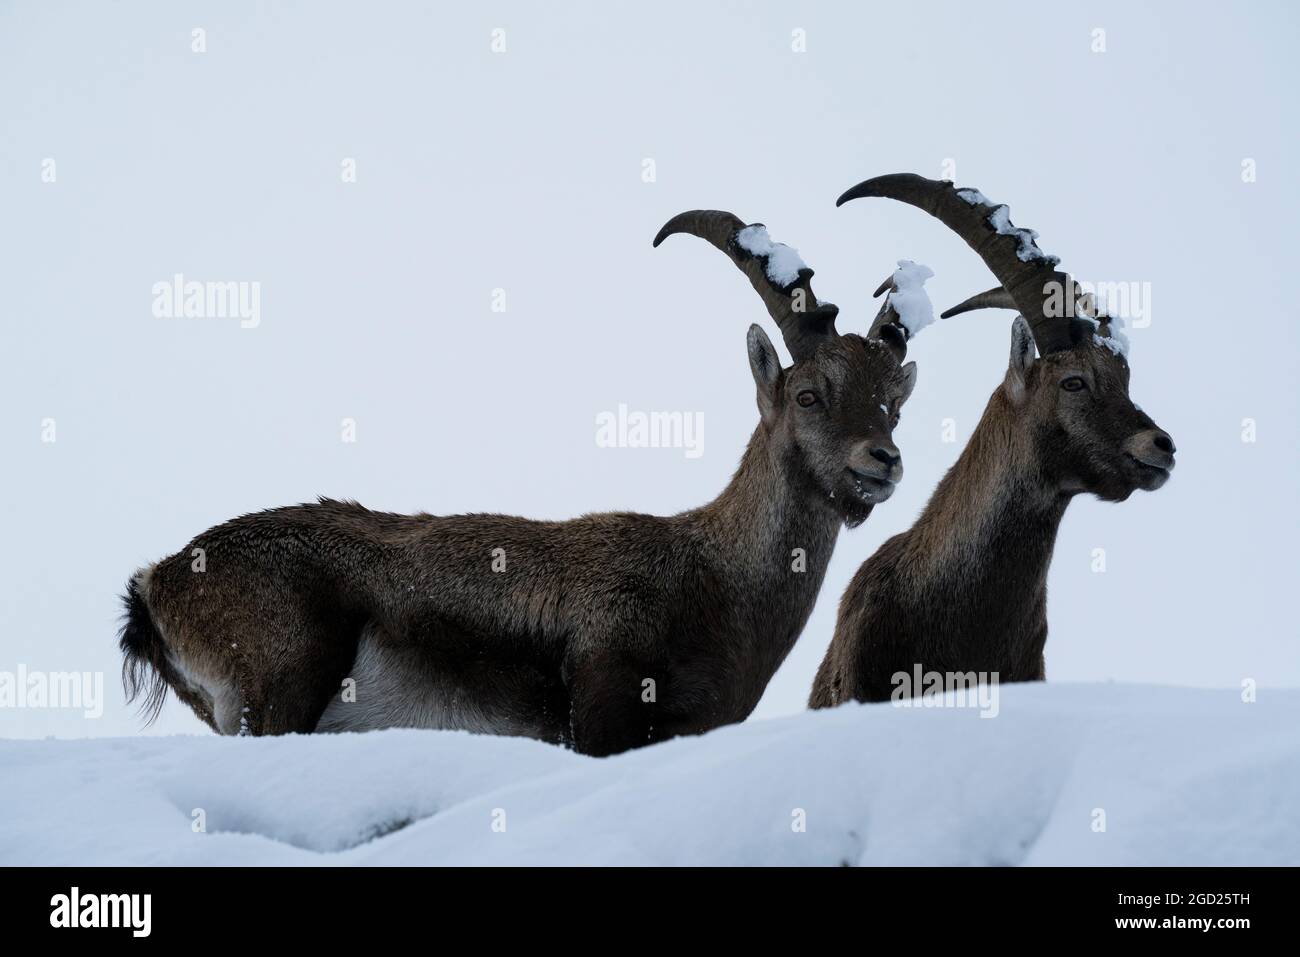 zoología / animales, mamífero / mamífero (Mammalia), ibex (Capra), ibexes, bucks en el Gamsgrube, DERECHOS ADICIONALES-ACLARAMIENTO-INFO-NO DISPONIBLE Foto de stock